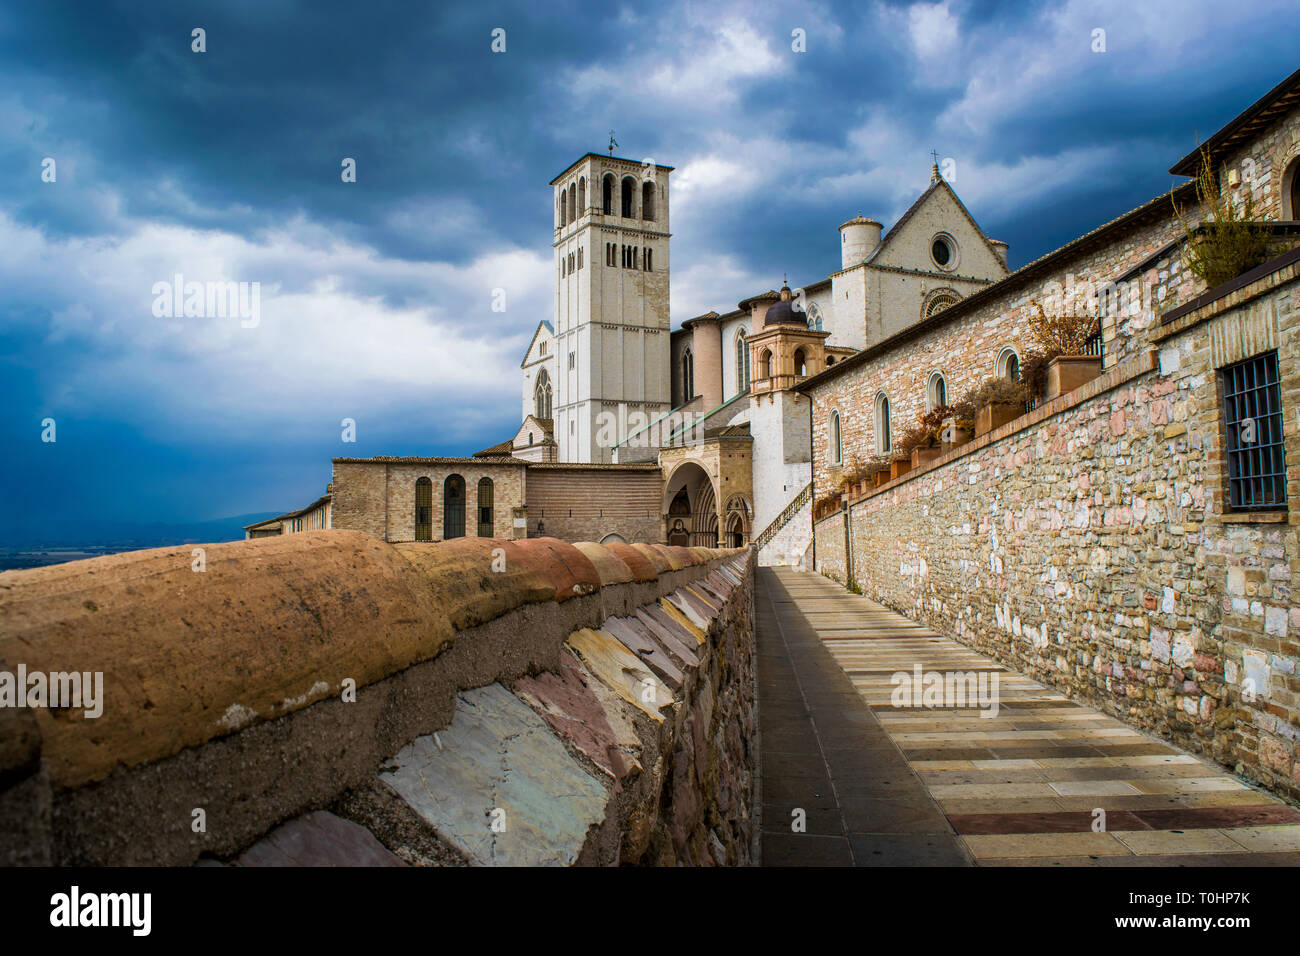 Il paesaggio della città medievale di Assisi in Italia, con l'antico villaggio storico e la Basilica di San Francesco con la torre campanaria sotto un Foto Stock